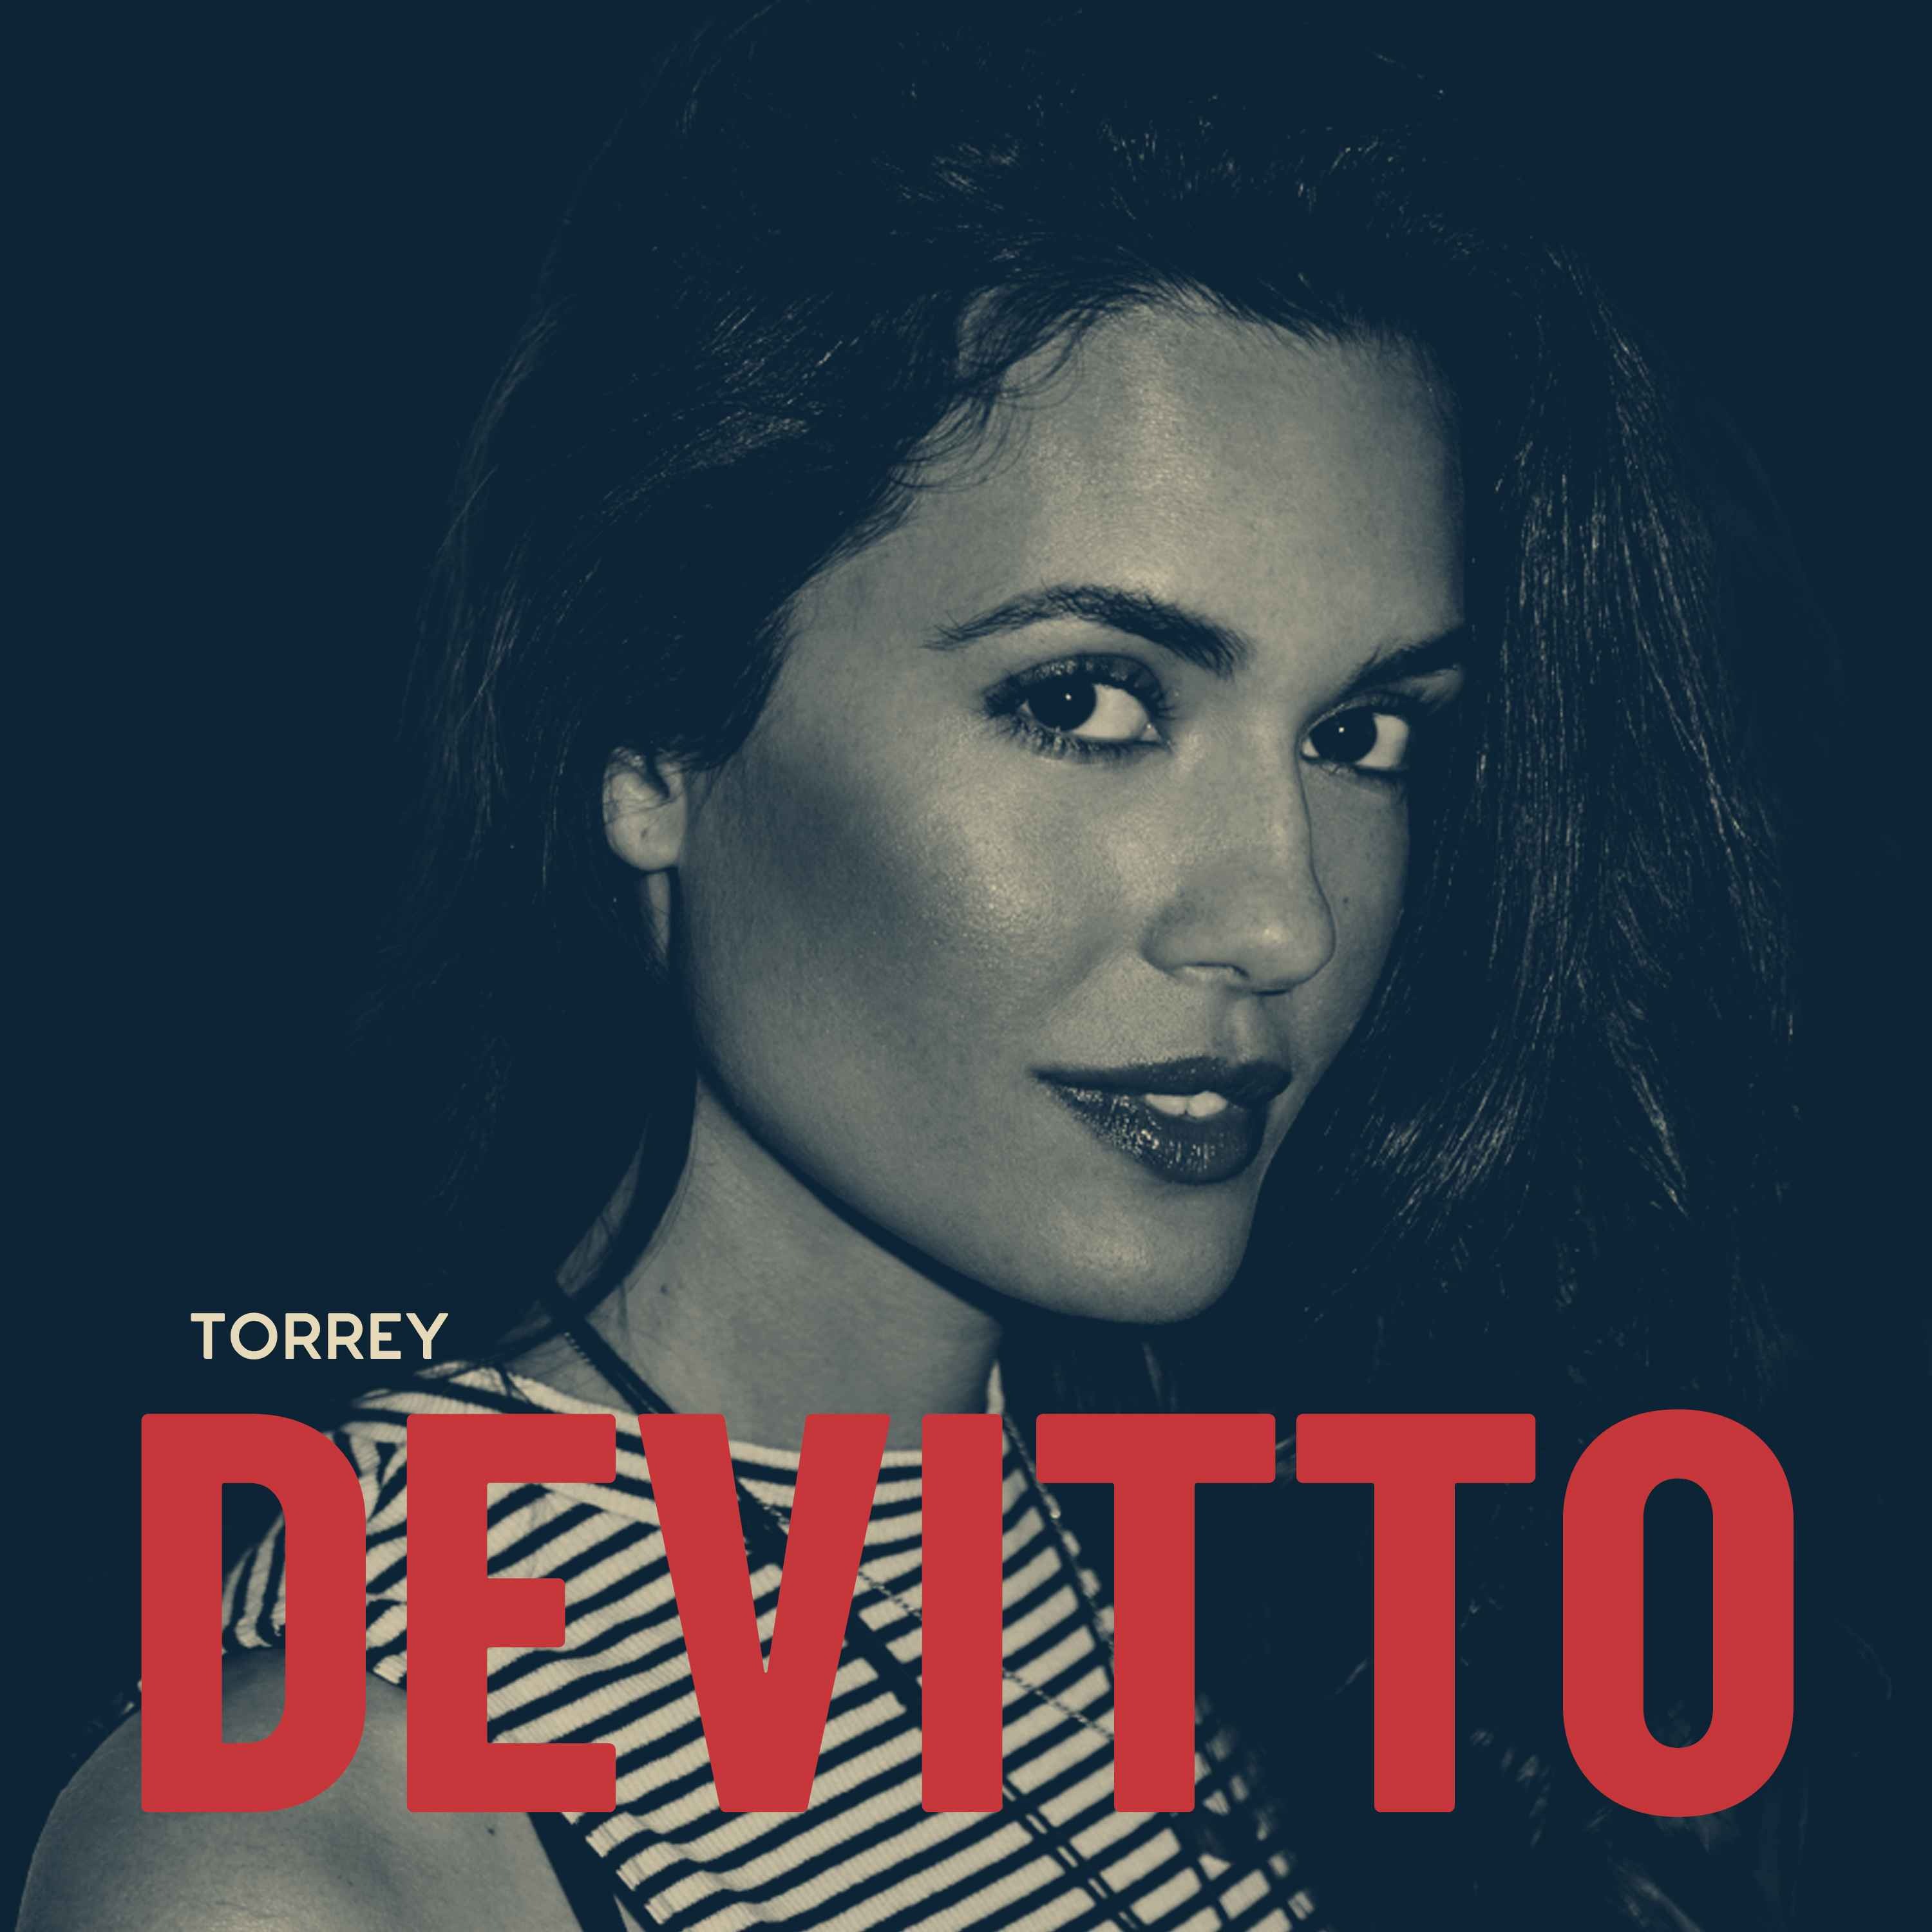 Torrey DeVitto